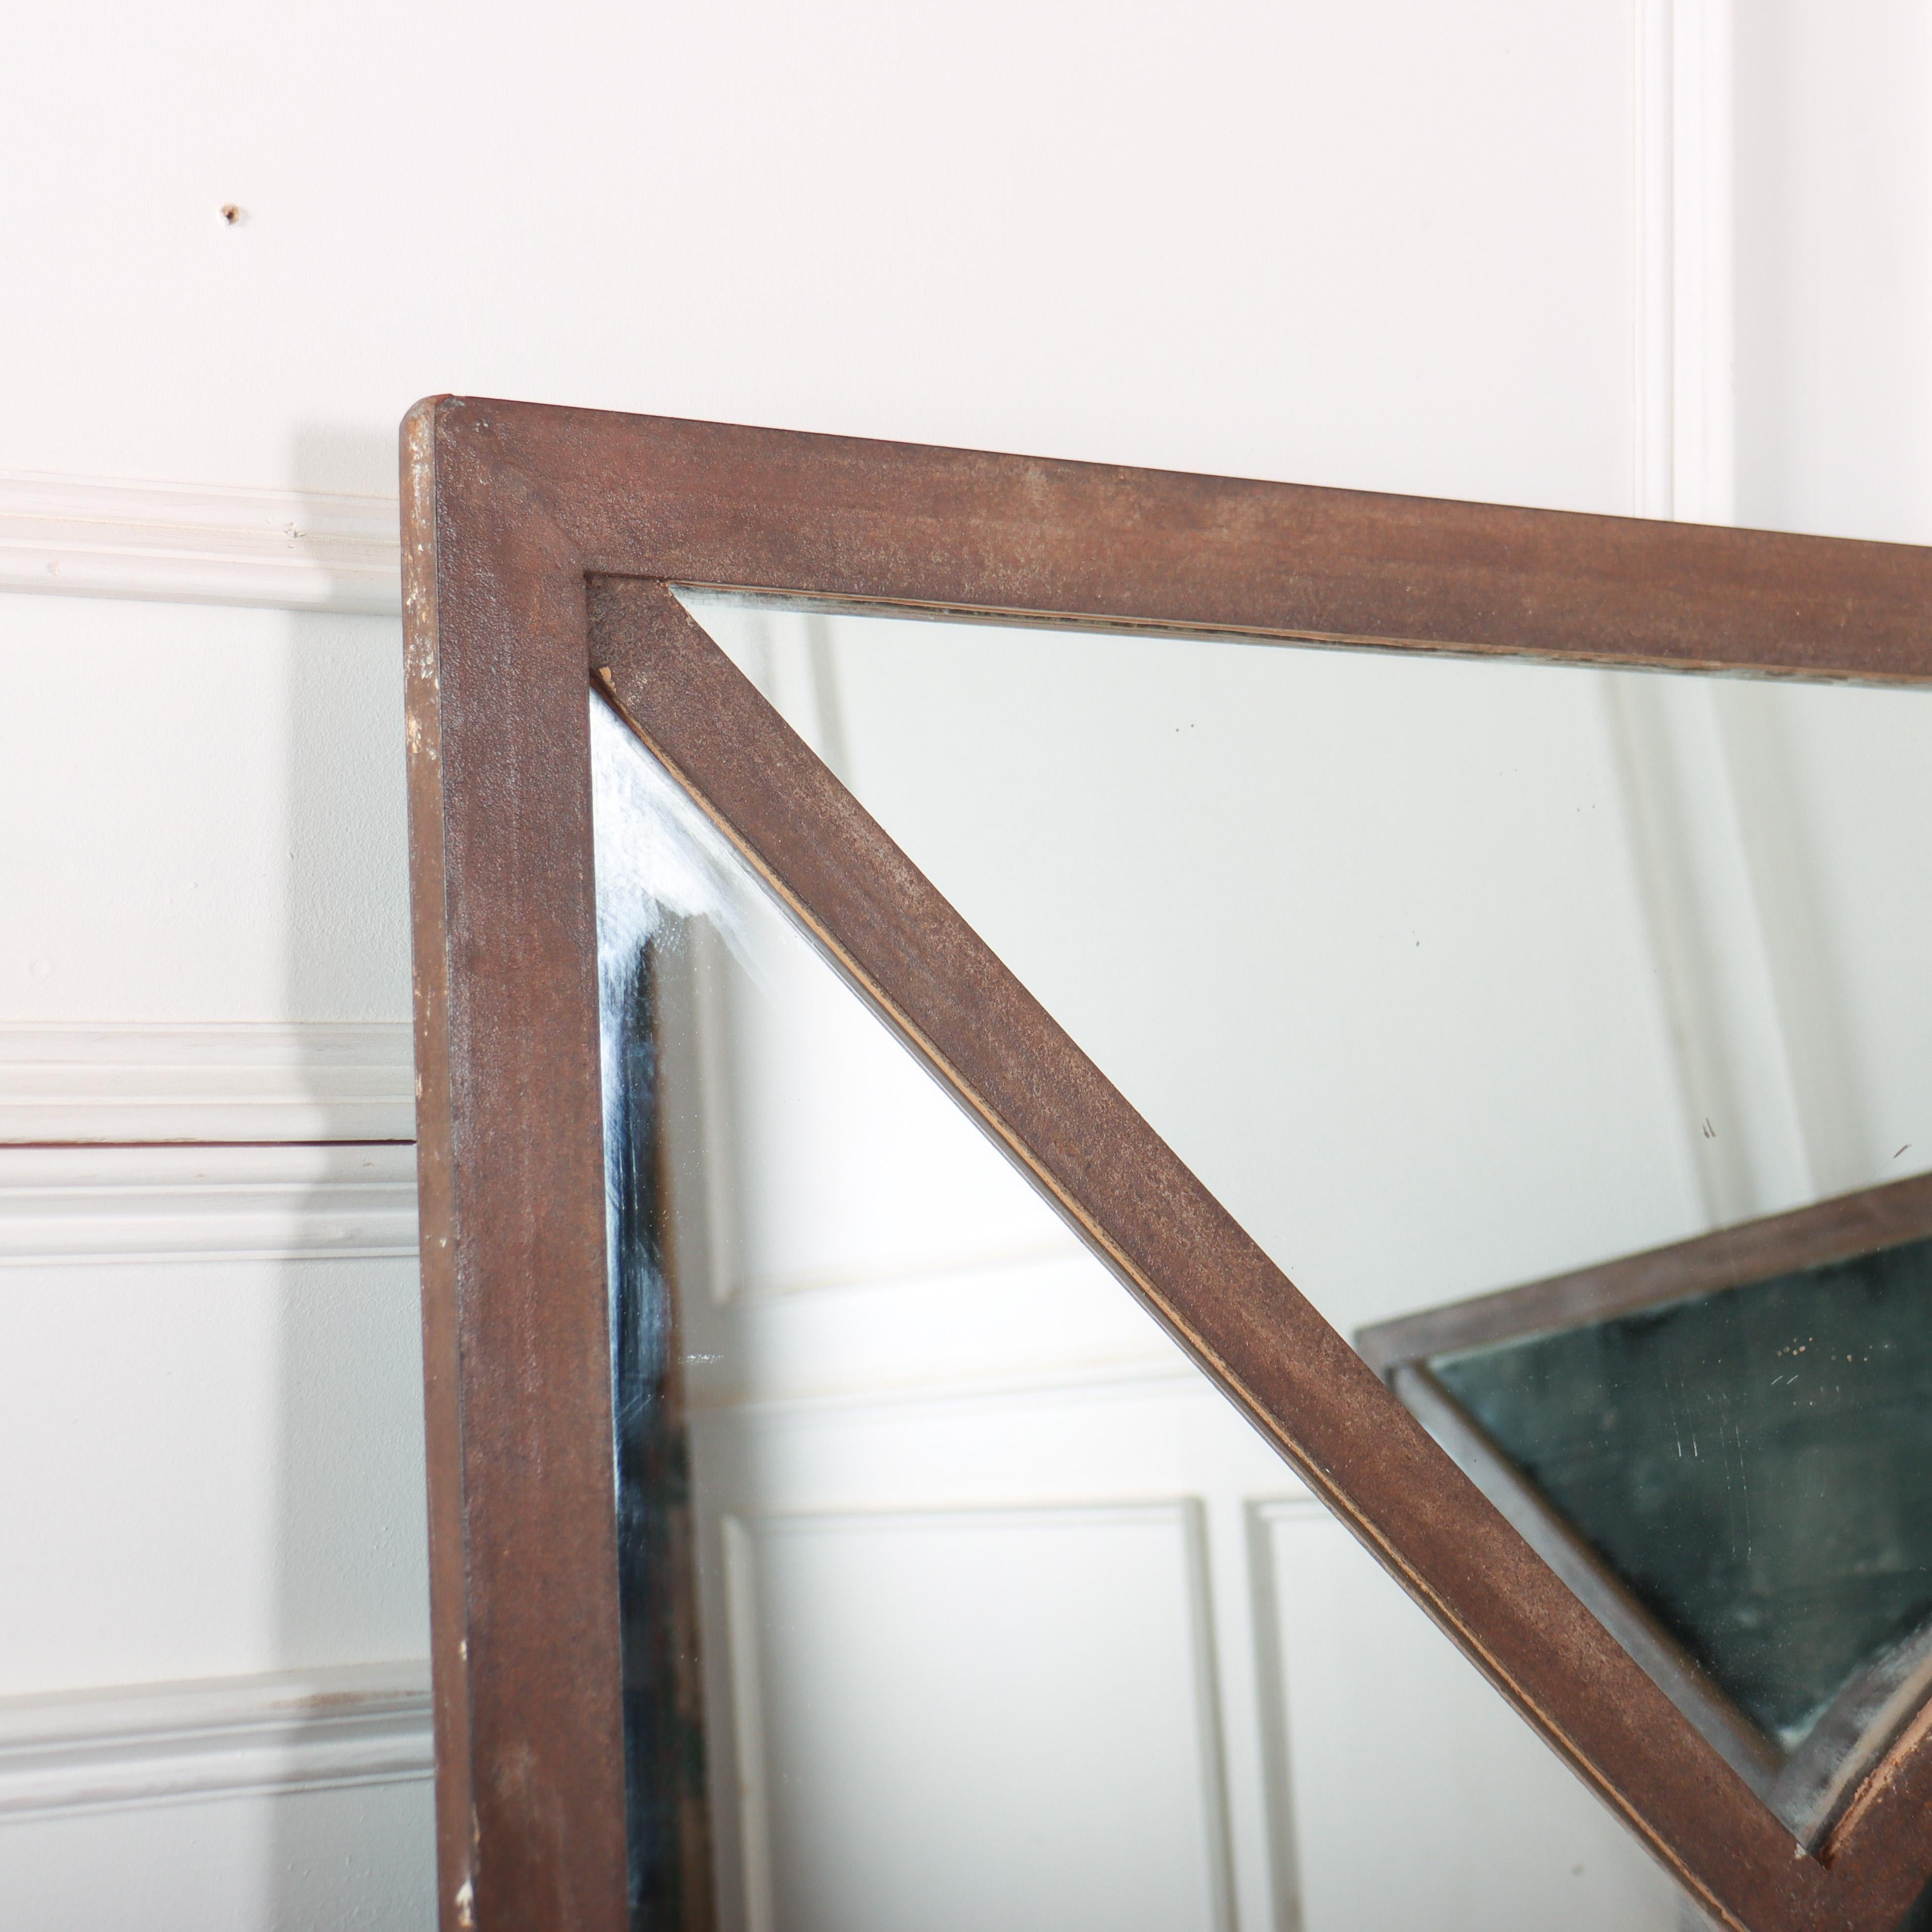 Paar metallgerahmte Fensterspiegel aus dem 19. Jahrhundert. 1890.

Jeder Spiegel wiegt 46 Kilogramm.

Die Maße unten zeigen die Rahmengröße, der Haken fügt 2 Zoll hinzu.

Referenz: 8374

Abmessungen
53,5 Zoll (136 cm) breit
3 cm (1 Zoll) tief
53,5